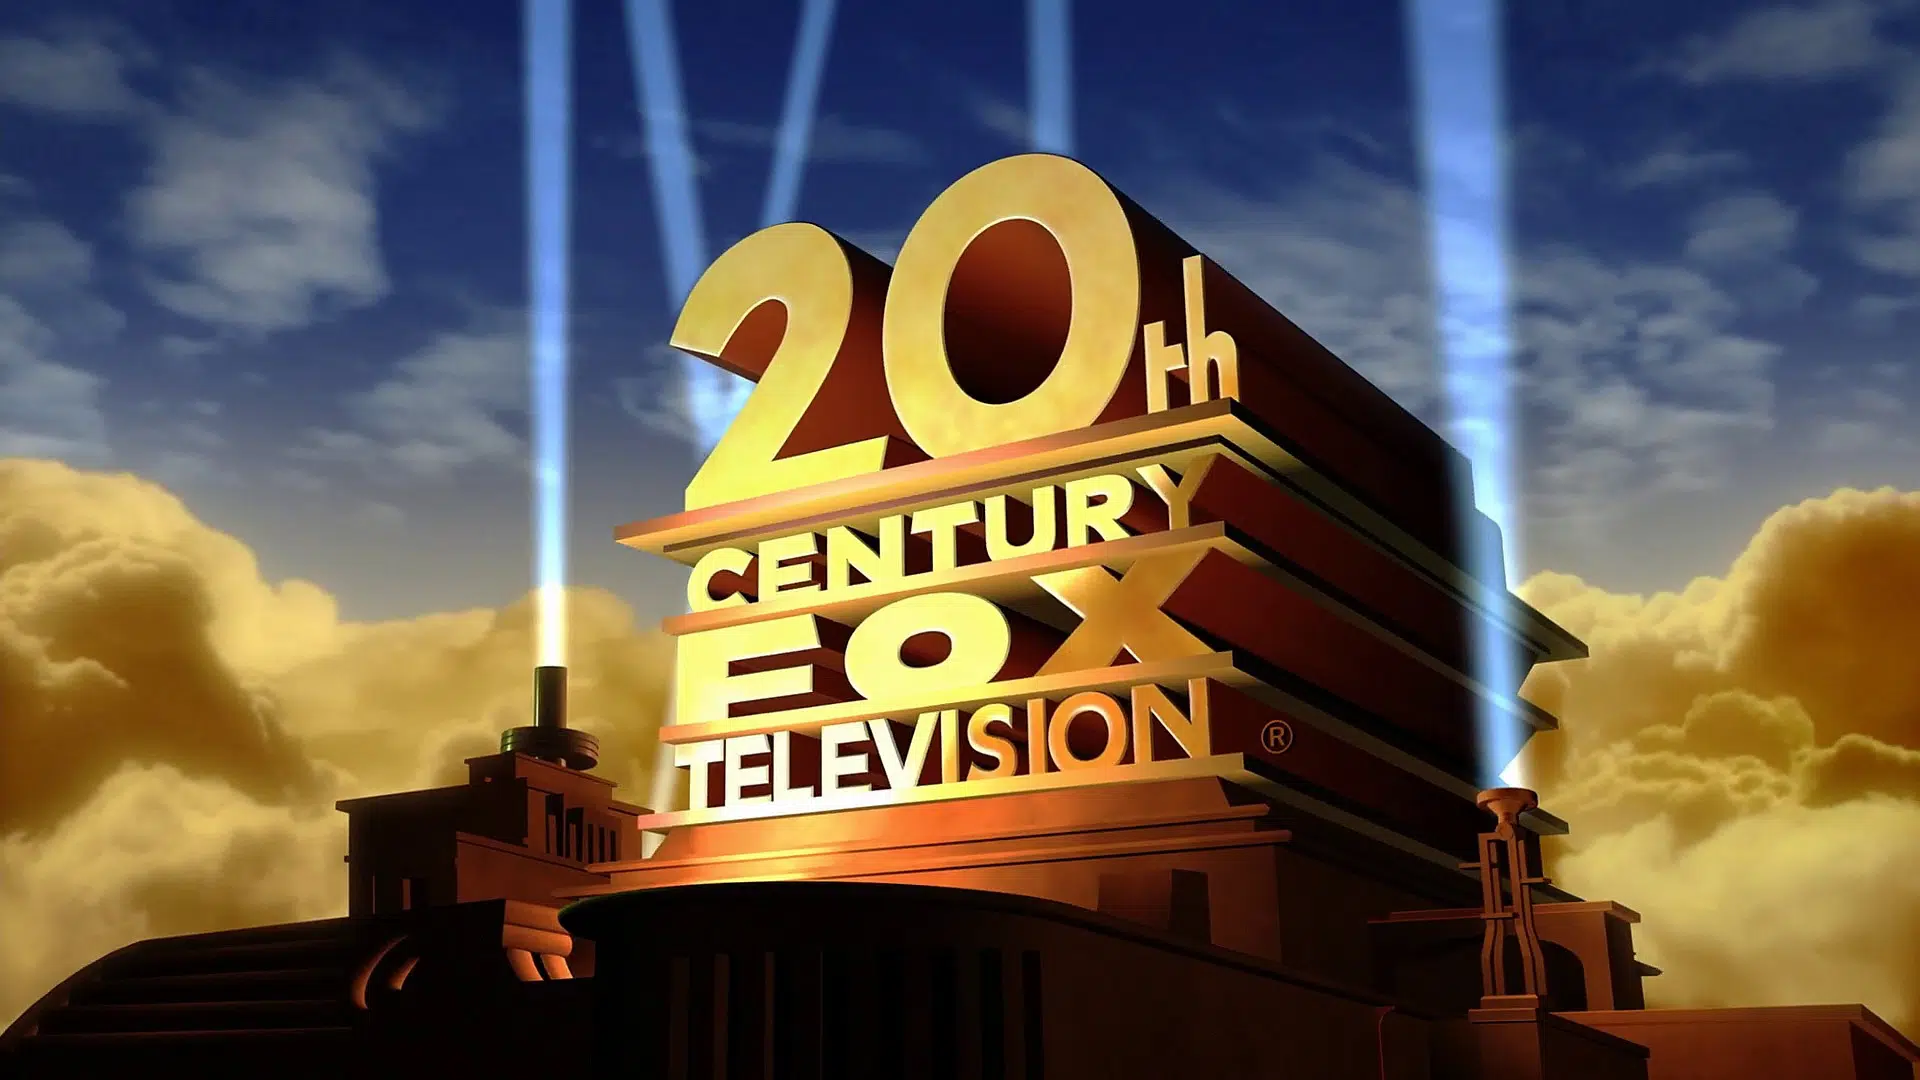 . "Chú cáo của thế kỷ 20" được thành lập vào 28 tháng 12 năm 1934, là kết quả của sự hợp nhất Fox Film Corporation sáng lập bởi William Fox từ năm 1915. Hãng phim tọa lạc tại Century City ở Los Angeles, phía Tây Beverly Hills.